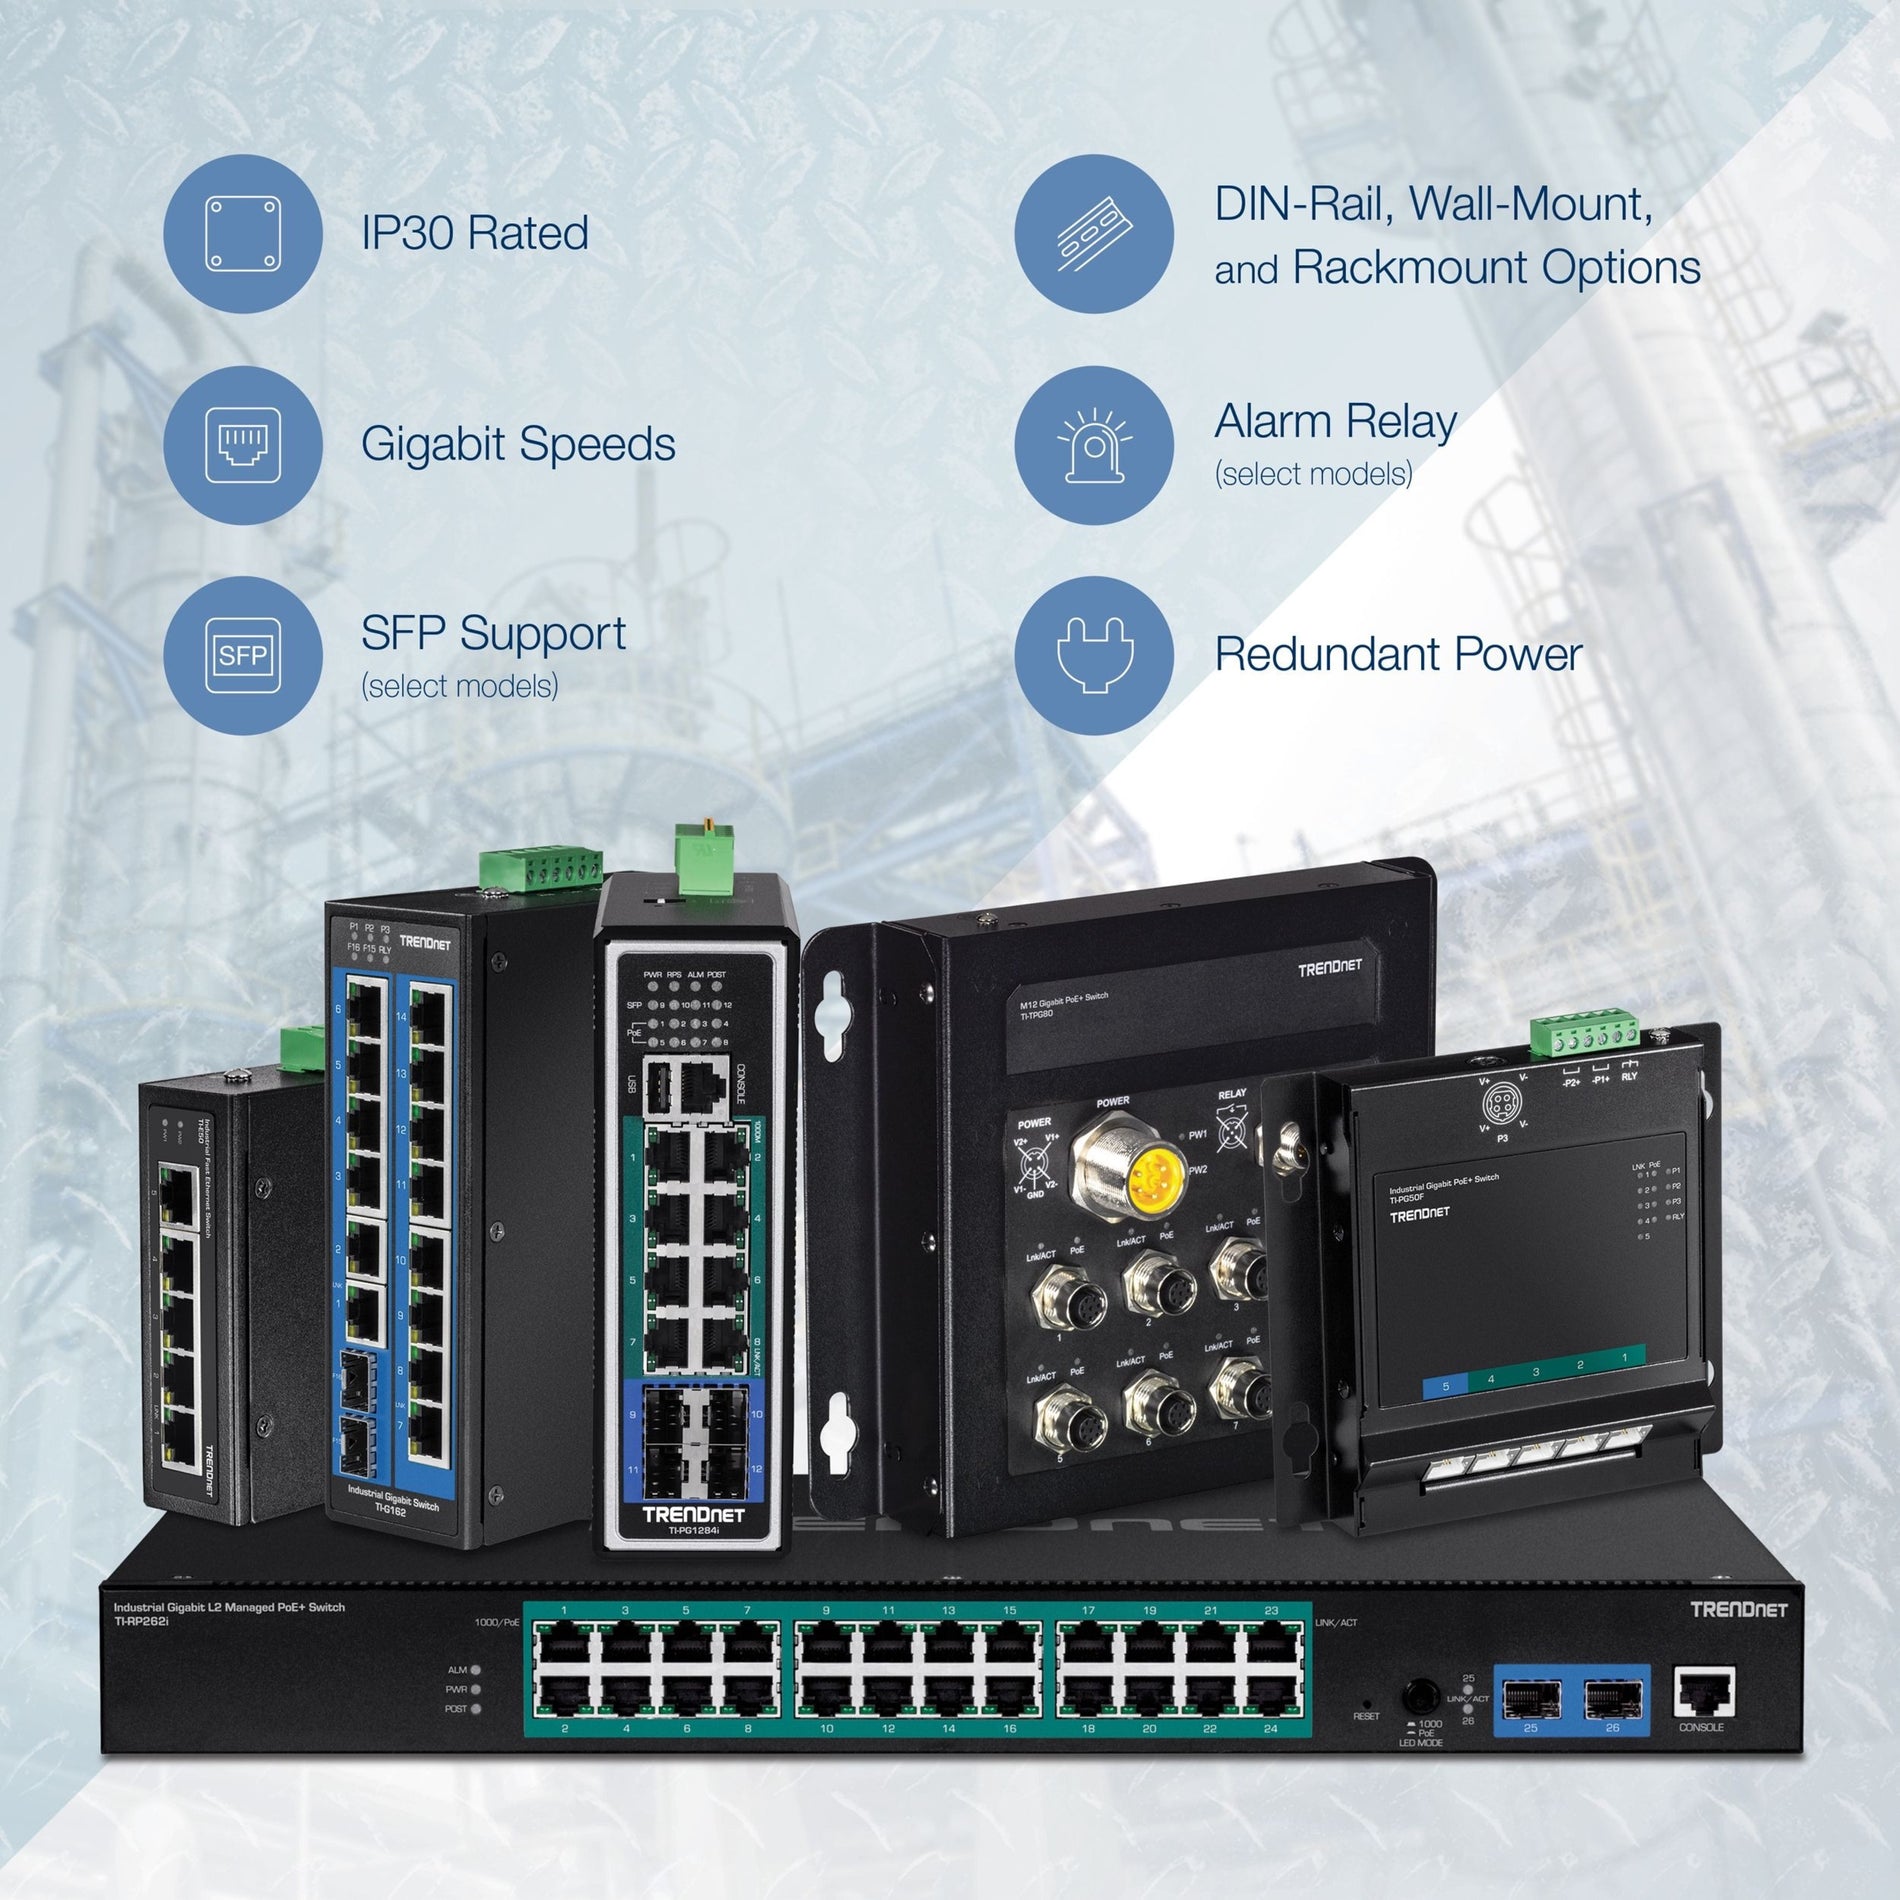 TRENDnet TI-G50 5端口硬化工业千兆交换机，10 Gbps交换容量，IP30级网络交换机（-40至167°F），配有DIN导轨和壁挂支架，终身保护，黑色 TRENDnet 特连达